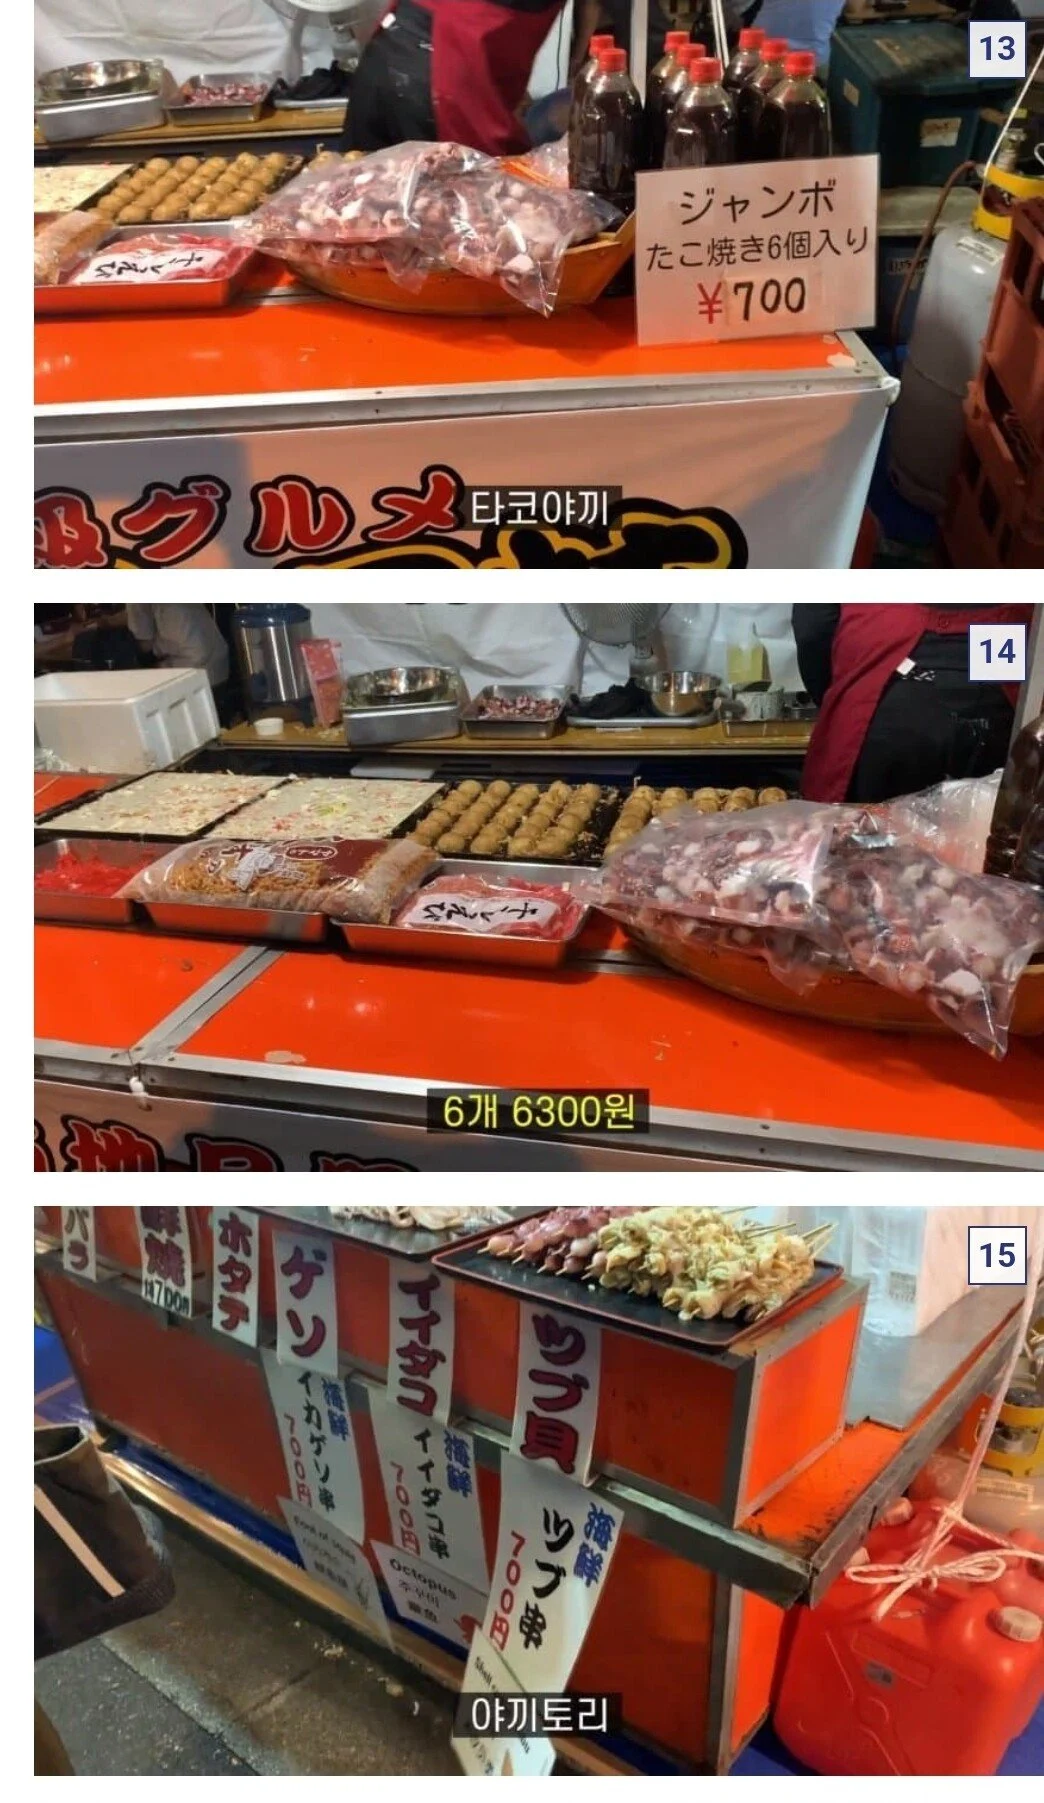 저렴하다는 일본축제 길거리 음식 물가